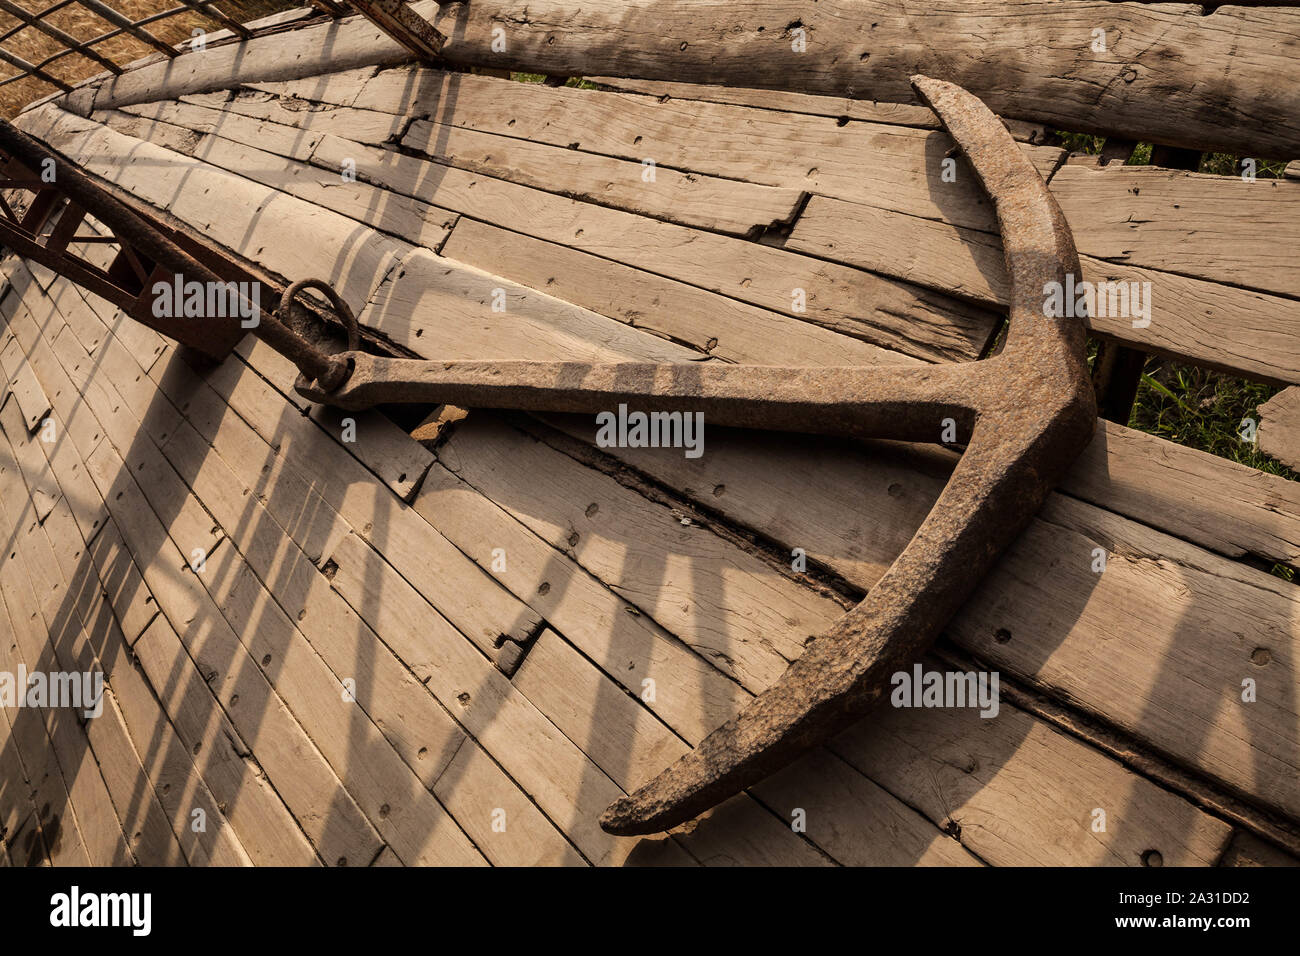 Une image évocatrice montrant une ancre rouillée imprégnée d'histoire maritime, reposant sur le plancher de bois vieilli d'un navire d'époque. Banque D'Images